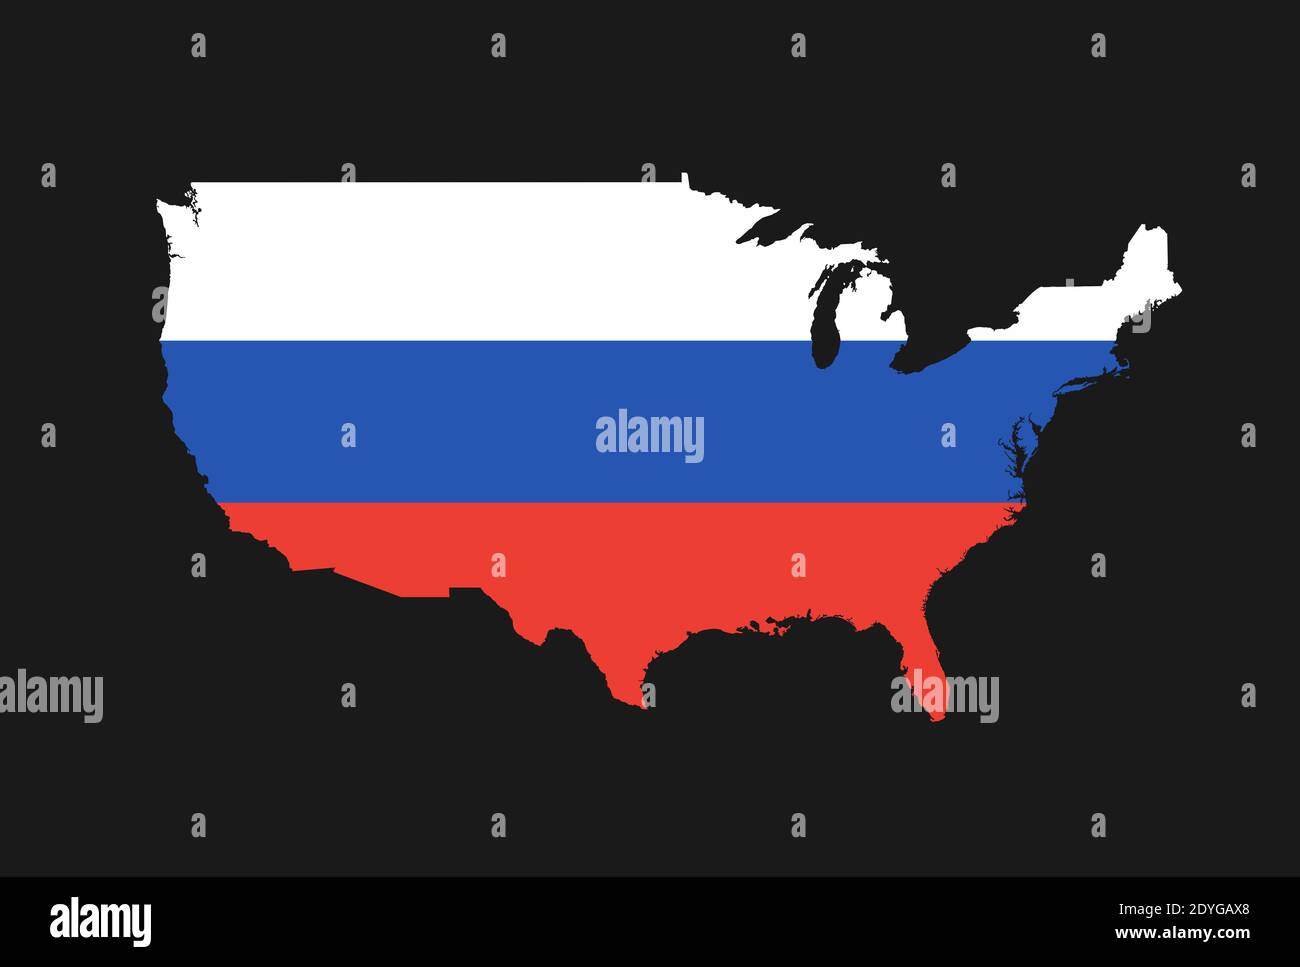 Mappa degli Stati Uniti a colori della Russia come metafora della sfera di interesse russa. Influenza politica, ingerenza, coinvolgimento e intervento dei russi Foto Stock